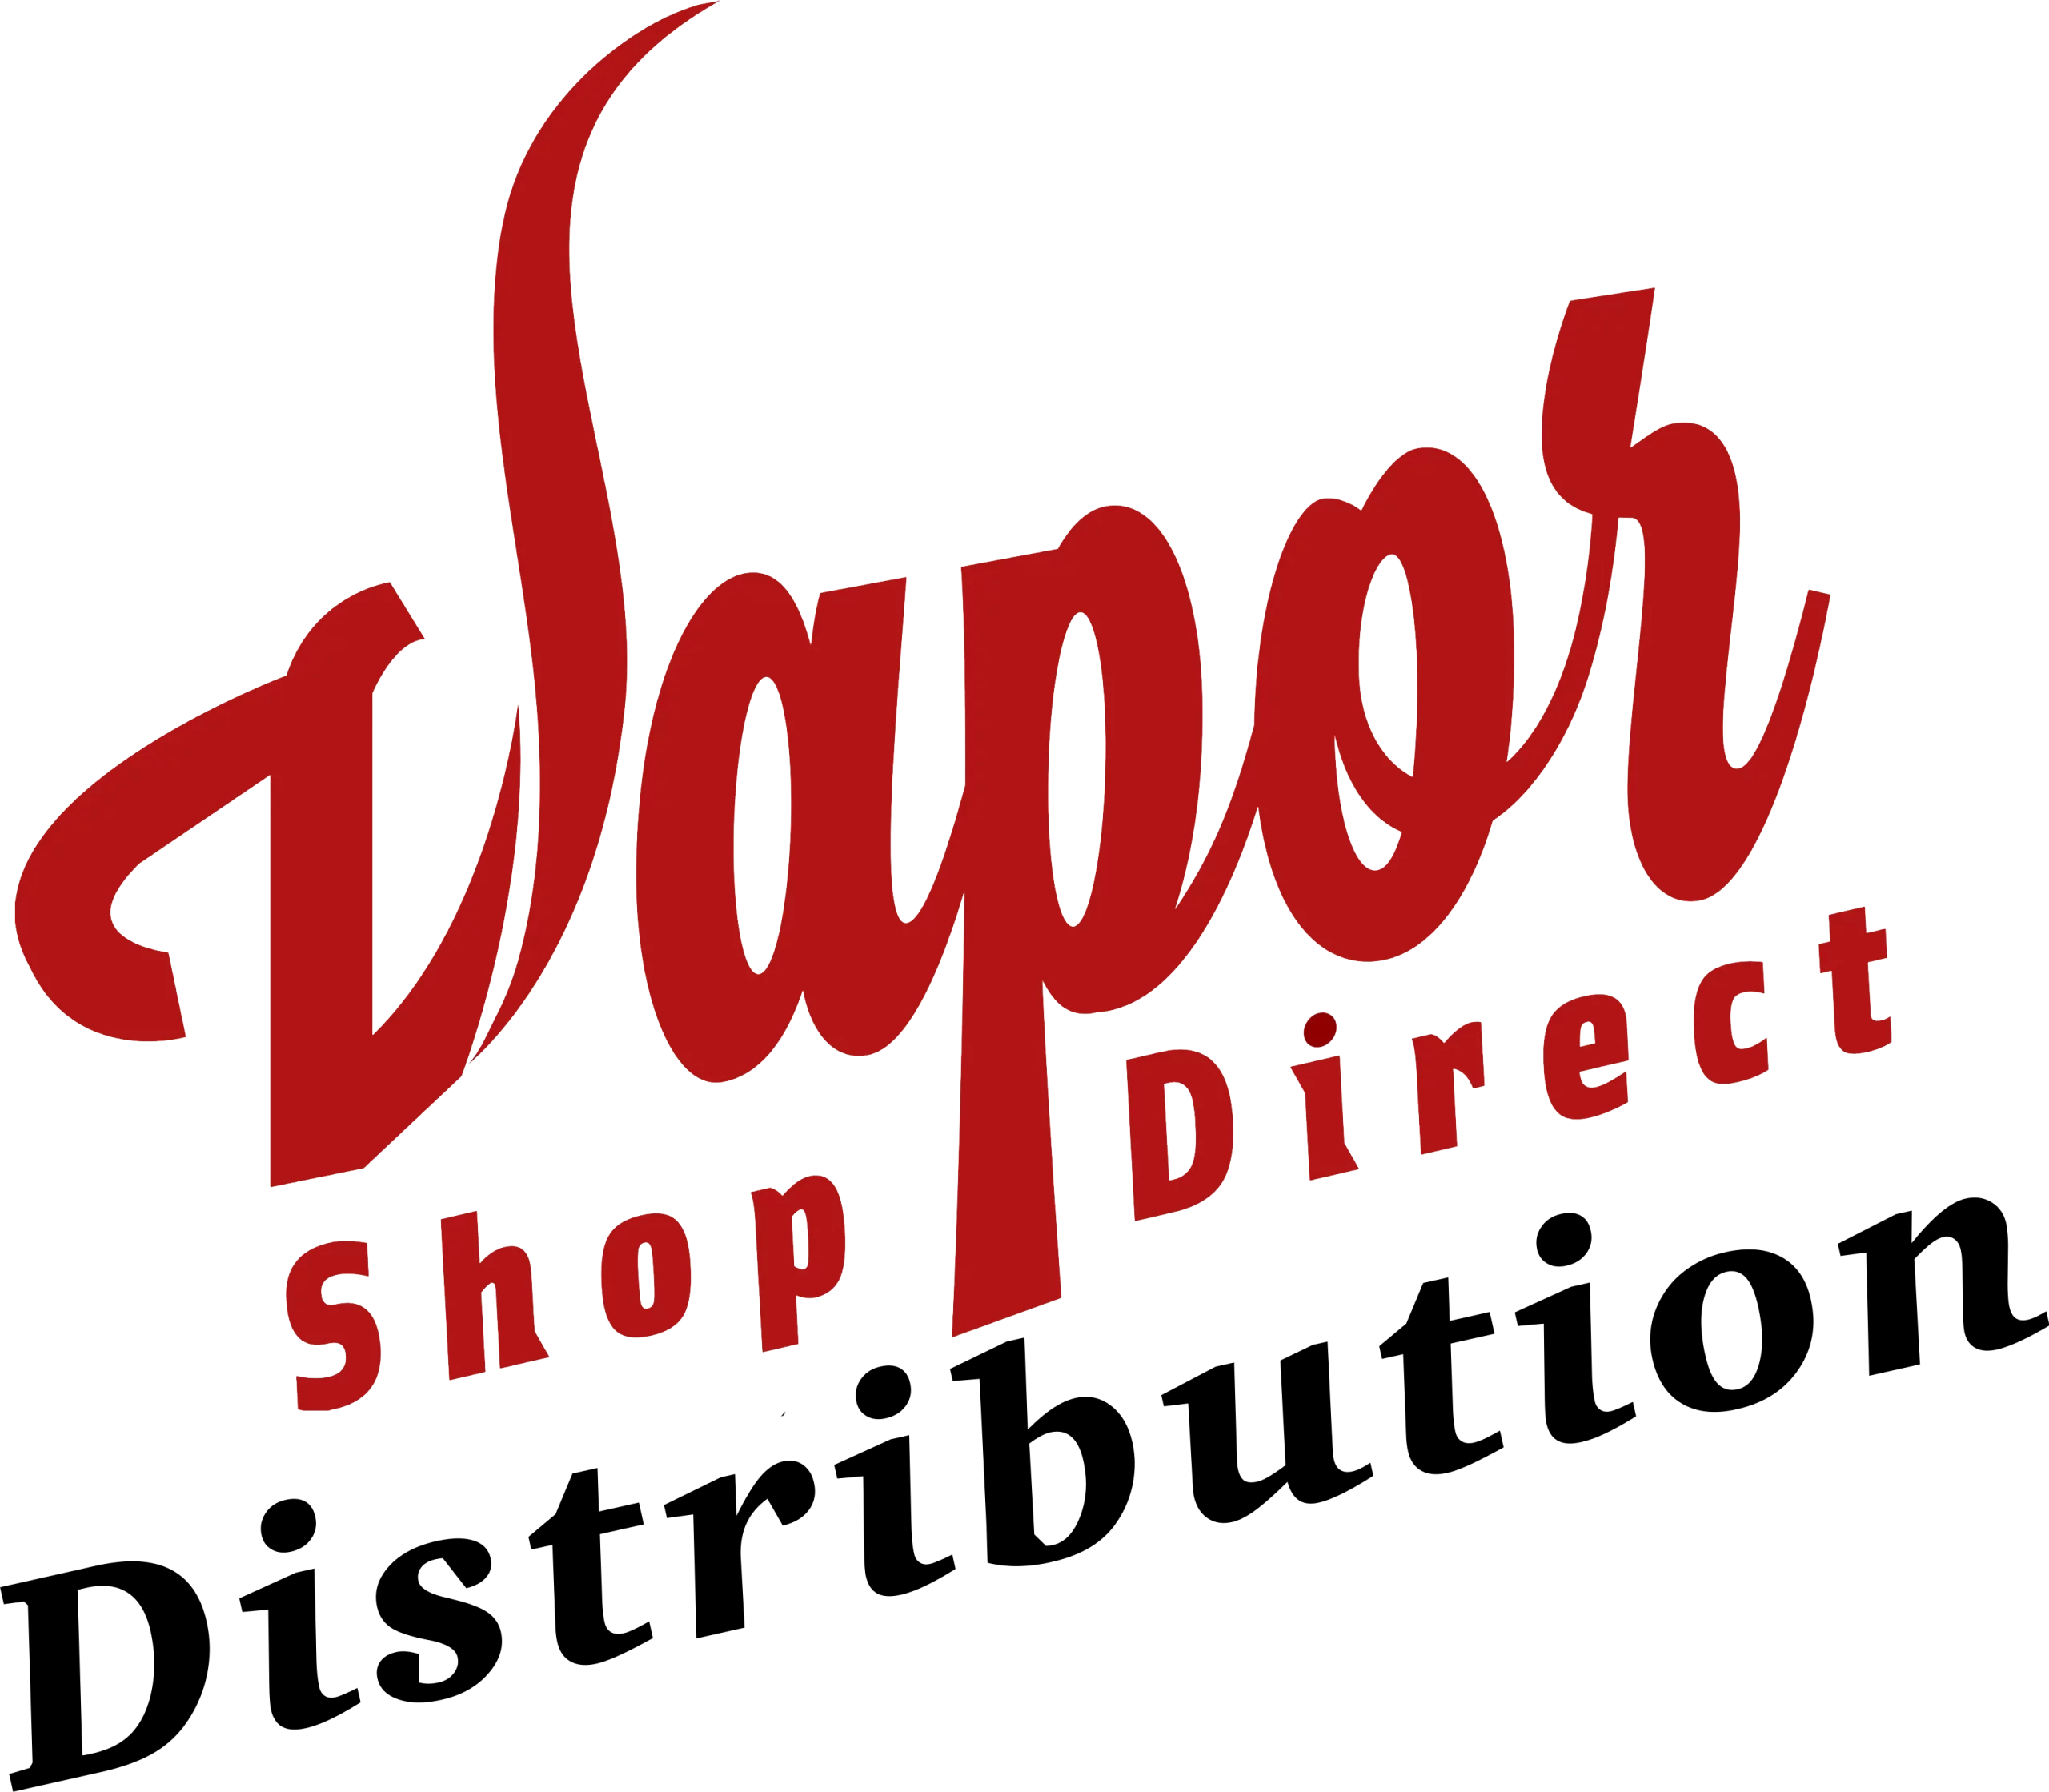 Vapor Shop Direct logosu 019cbe2e f280 4ef7 a9a0 06e3e9703cfc ölçekli